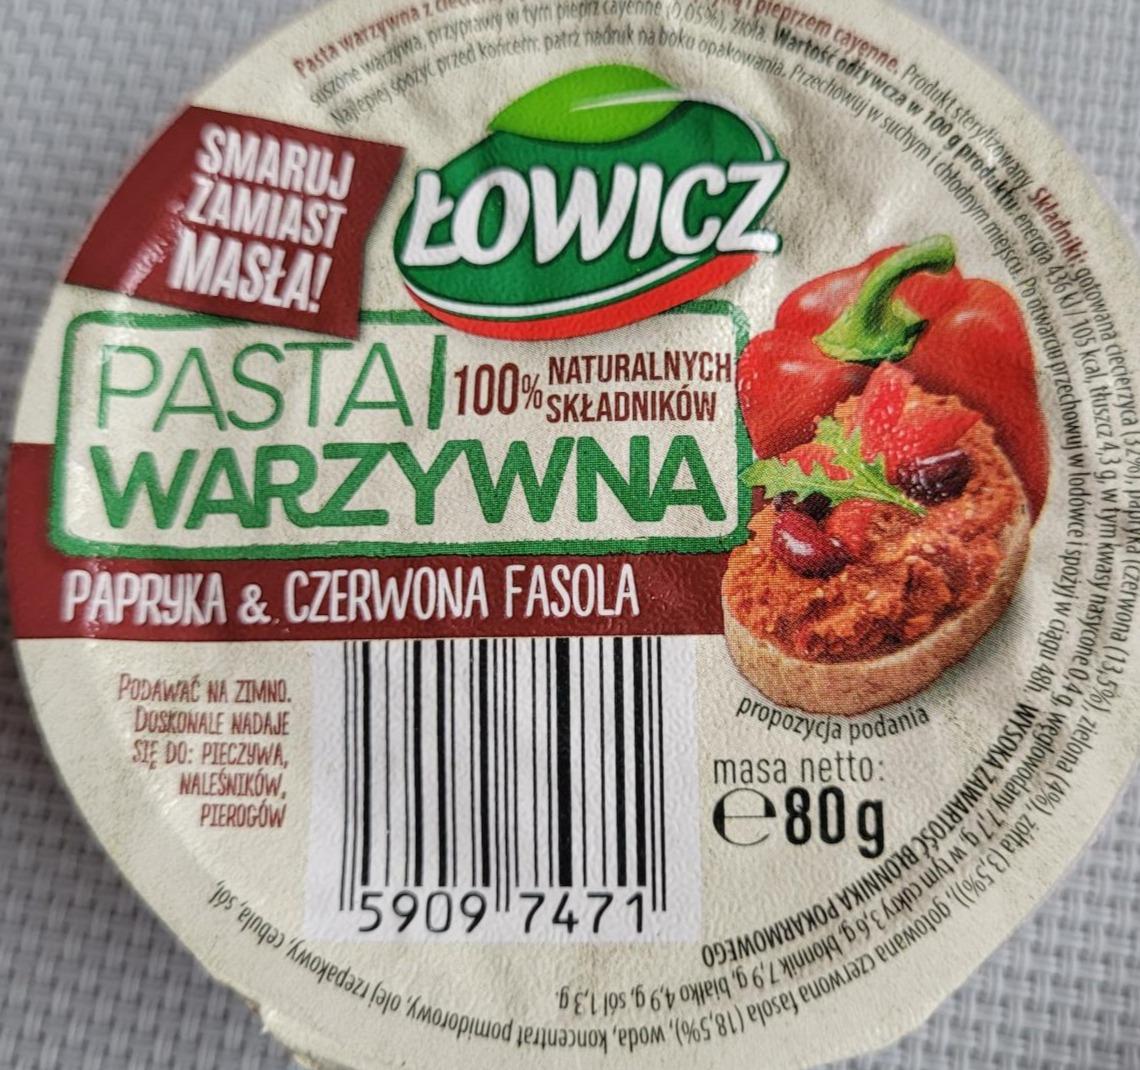 Zdjęcia - Łowicz Pasta warzywna papryka & czerwona fasola 80 g